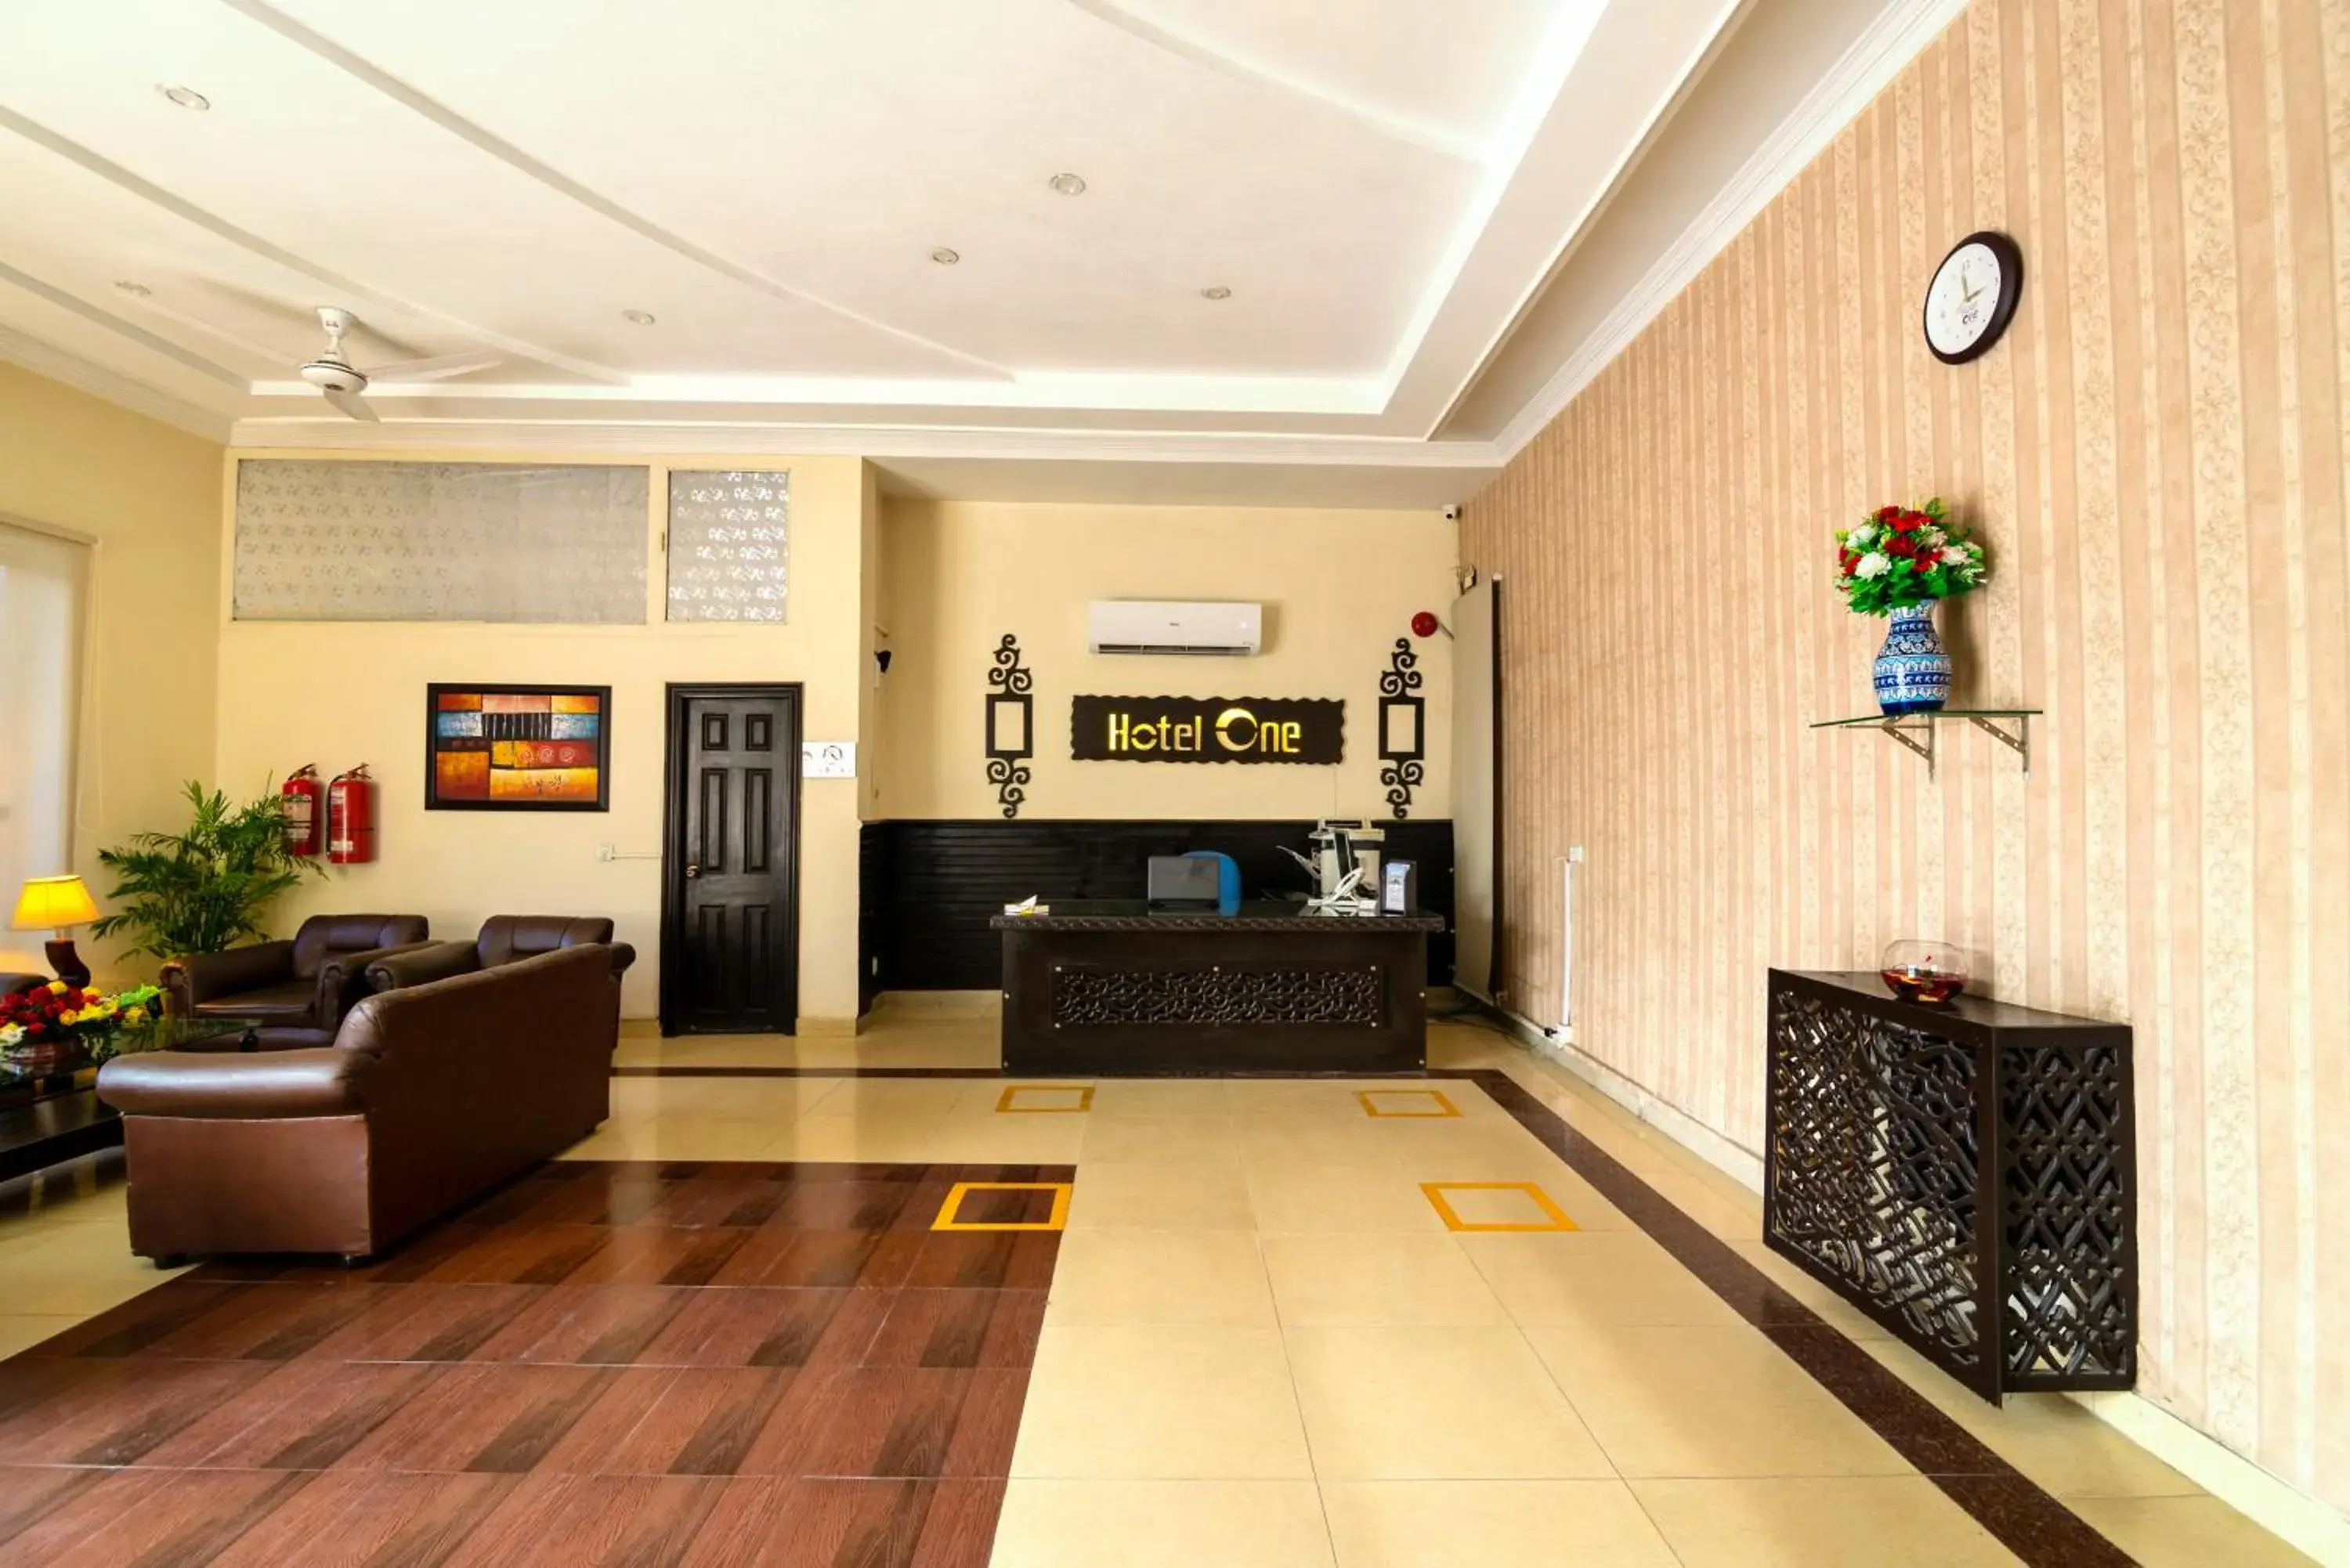 Lobby or reception in Hotel One Lalazar Multan